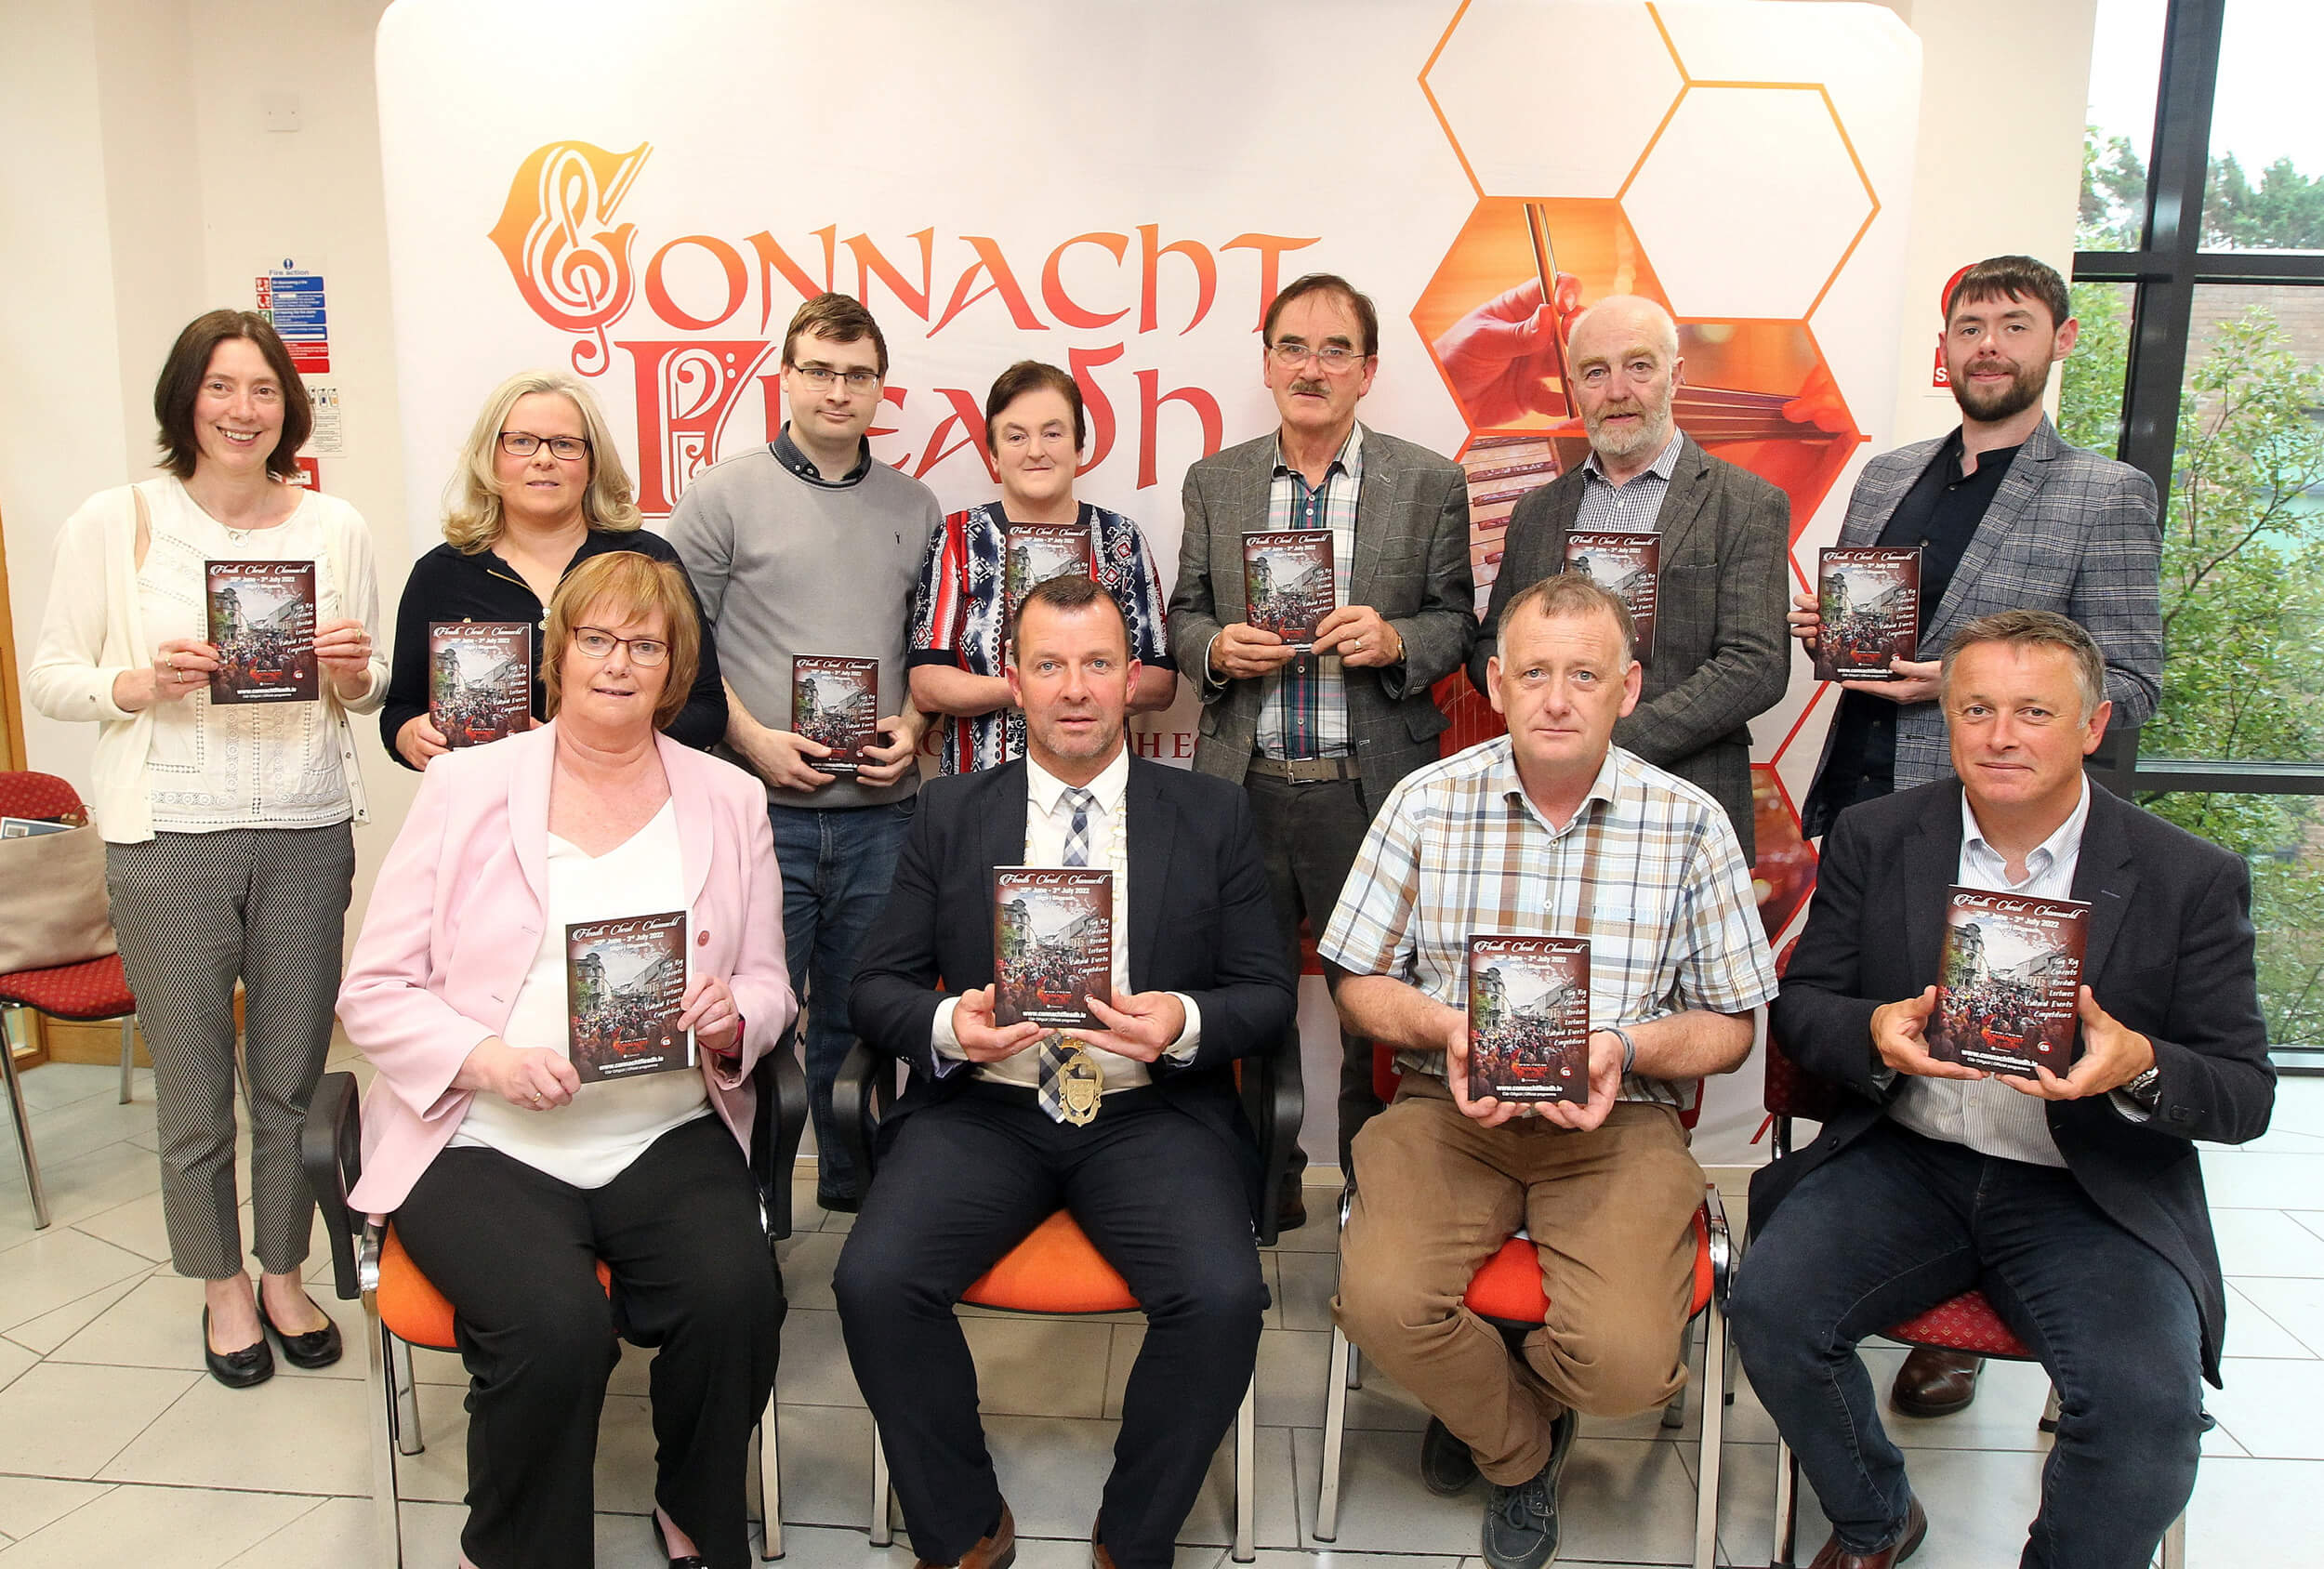 Connacht Fleadh 2022 Launched in Sligo